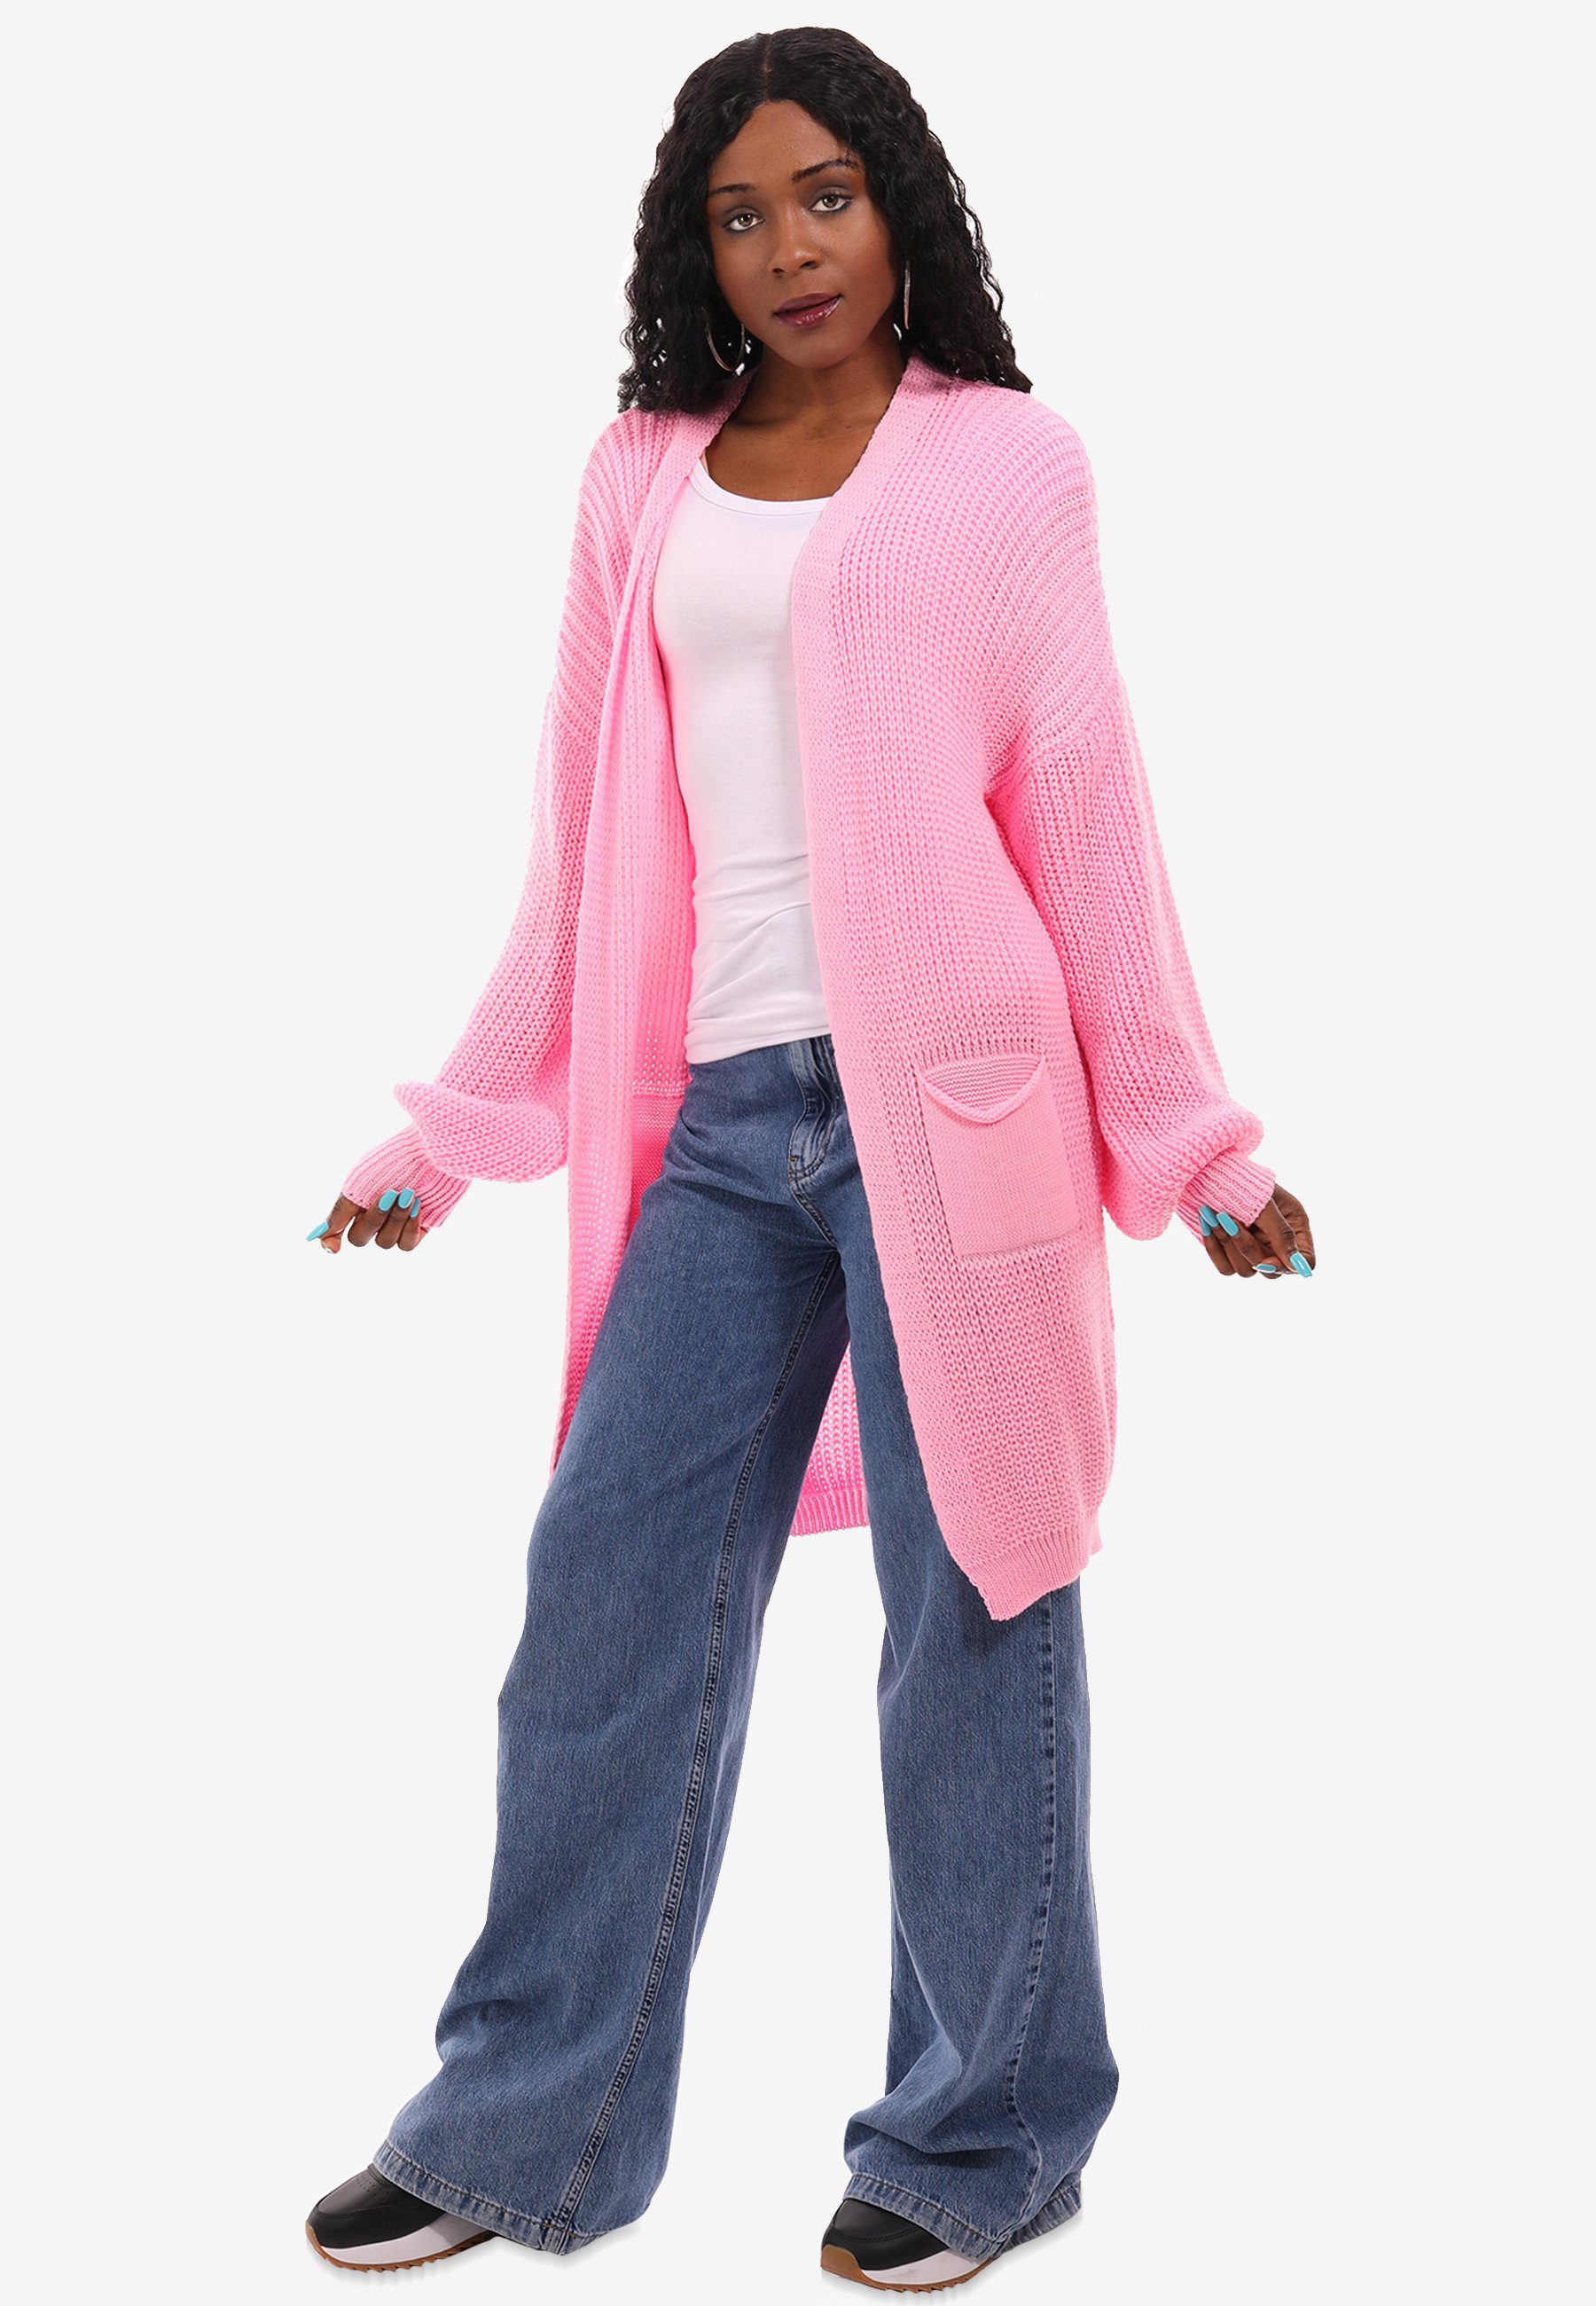 YC Fashion & Style Taschen aufgesetzten Taschen mit Cardigan rosa mit Size One in Strick-Cardigan Unifarbe